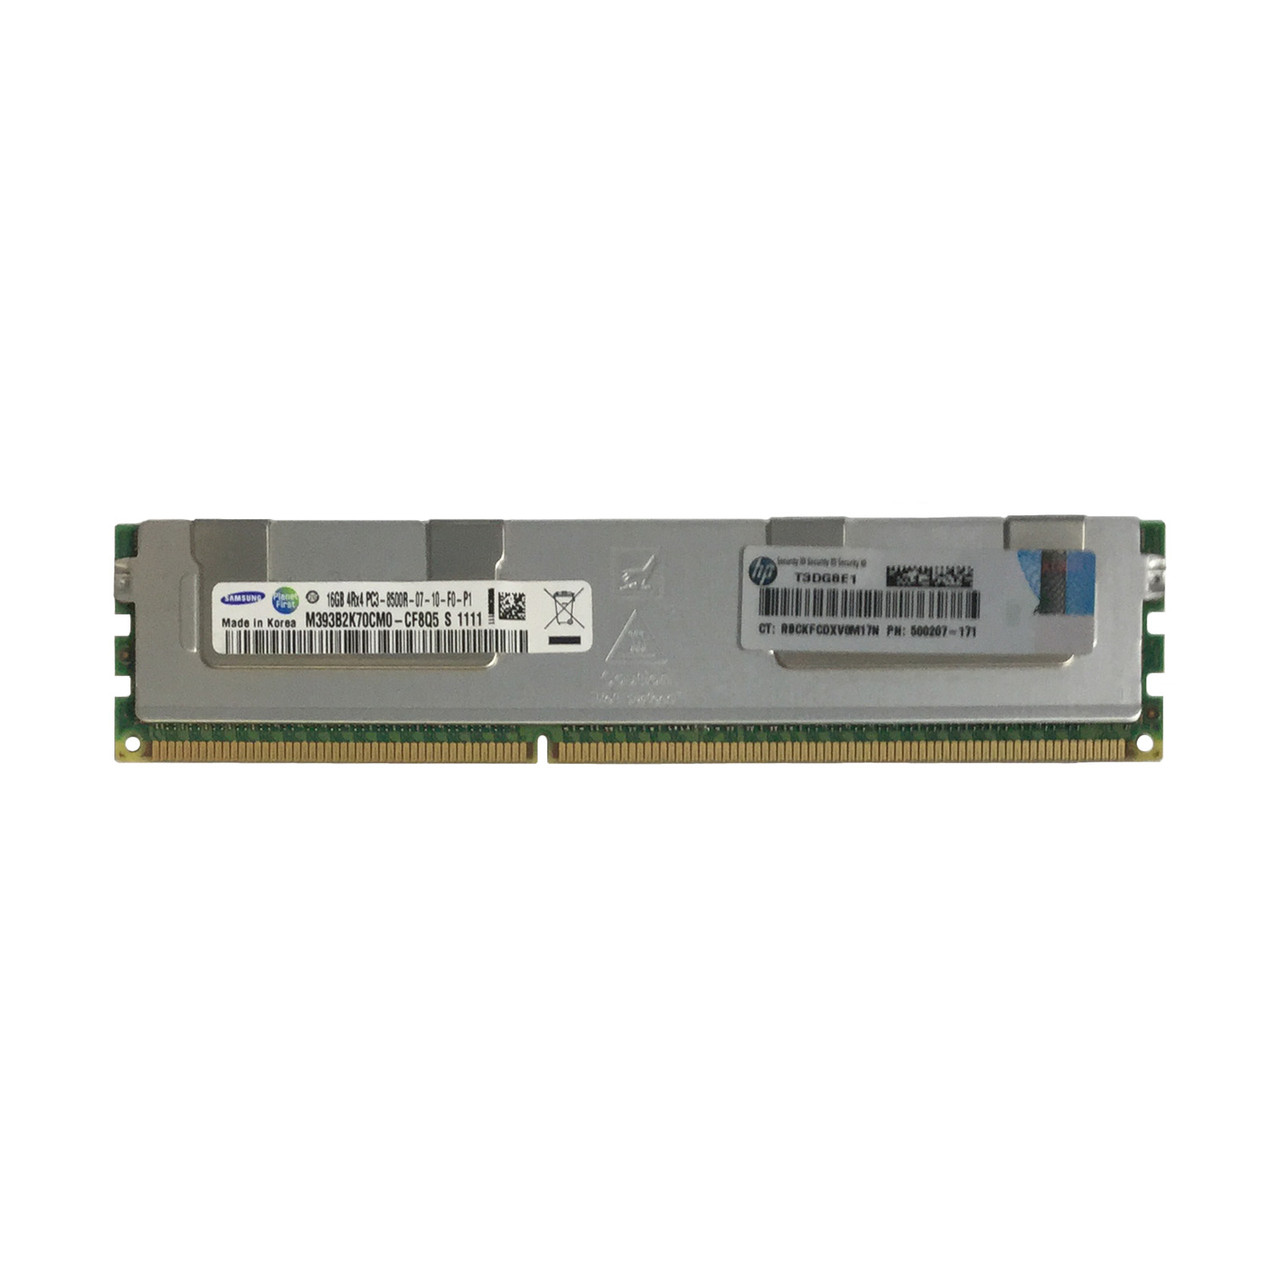 HP 500207-171 16GB PC3-8500r Memory Quad Rank 593915-B21 595098-001 